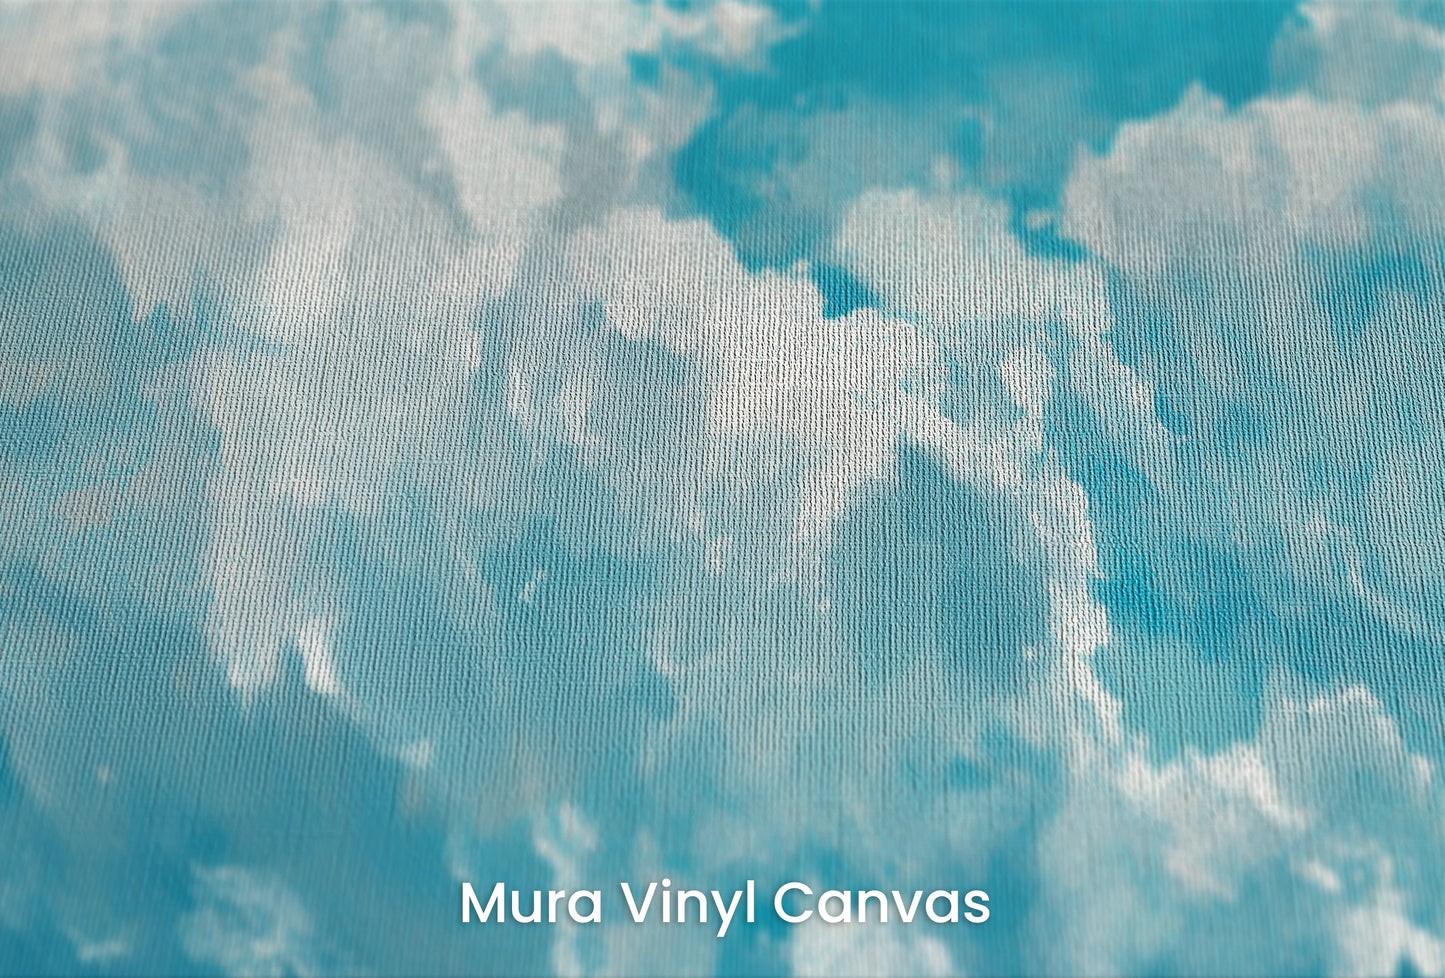 Zbliżenie na artystyczną fototapetę o nazwie Azure Purity na podłożu Mura Vinyl Canvas - faktura naturalnego płótna.